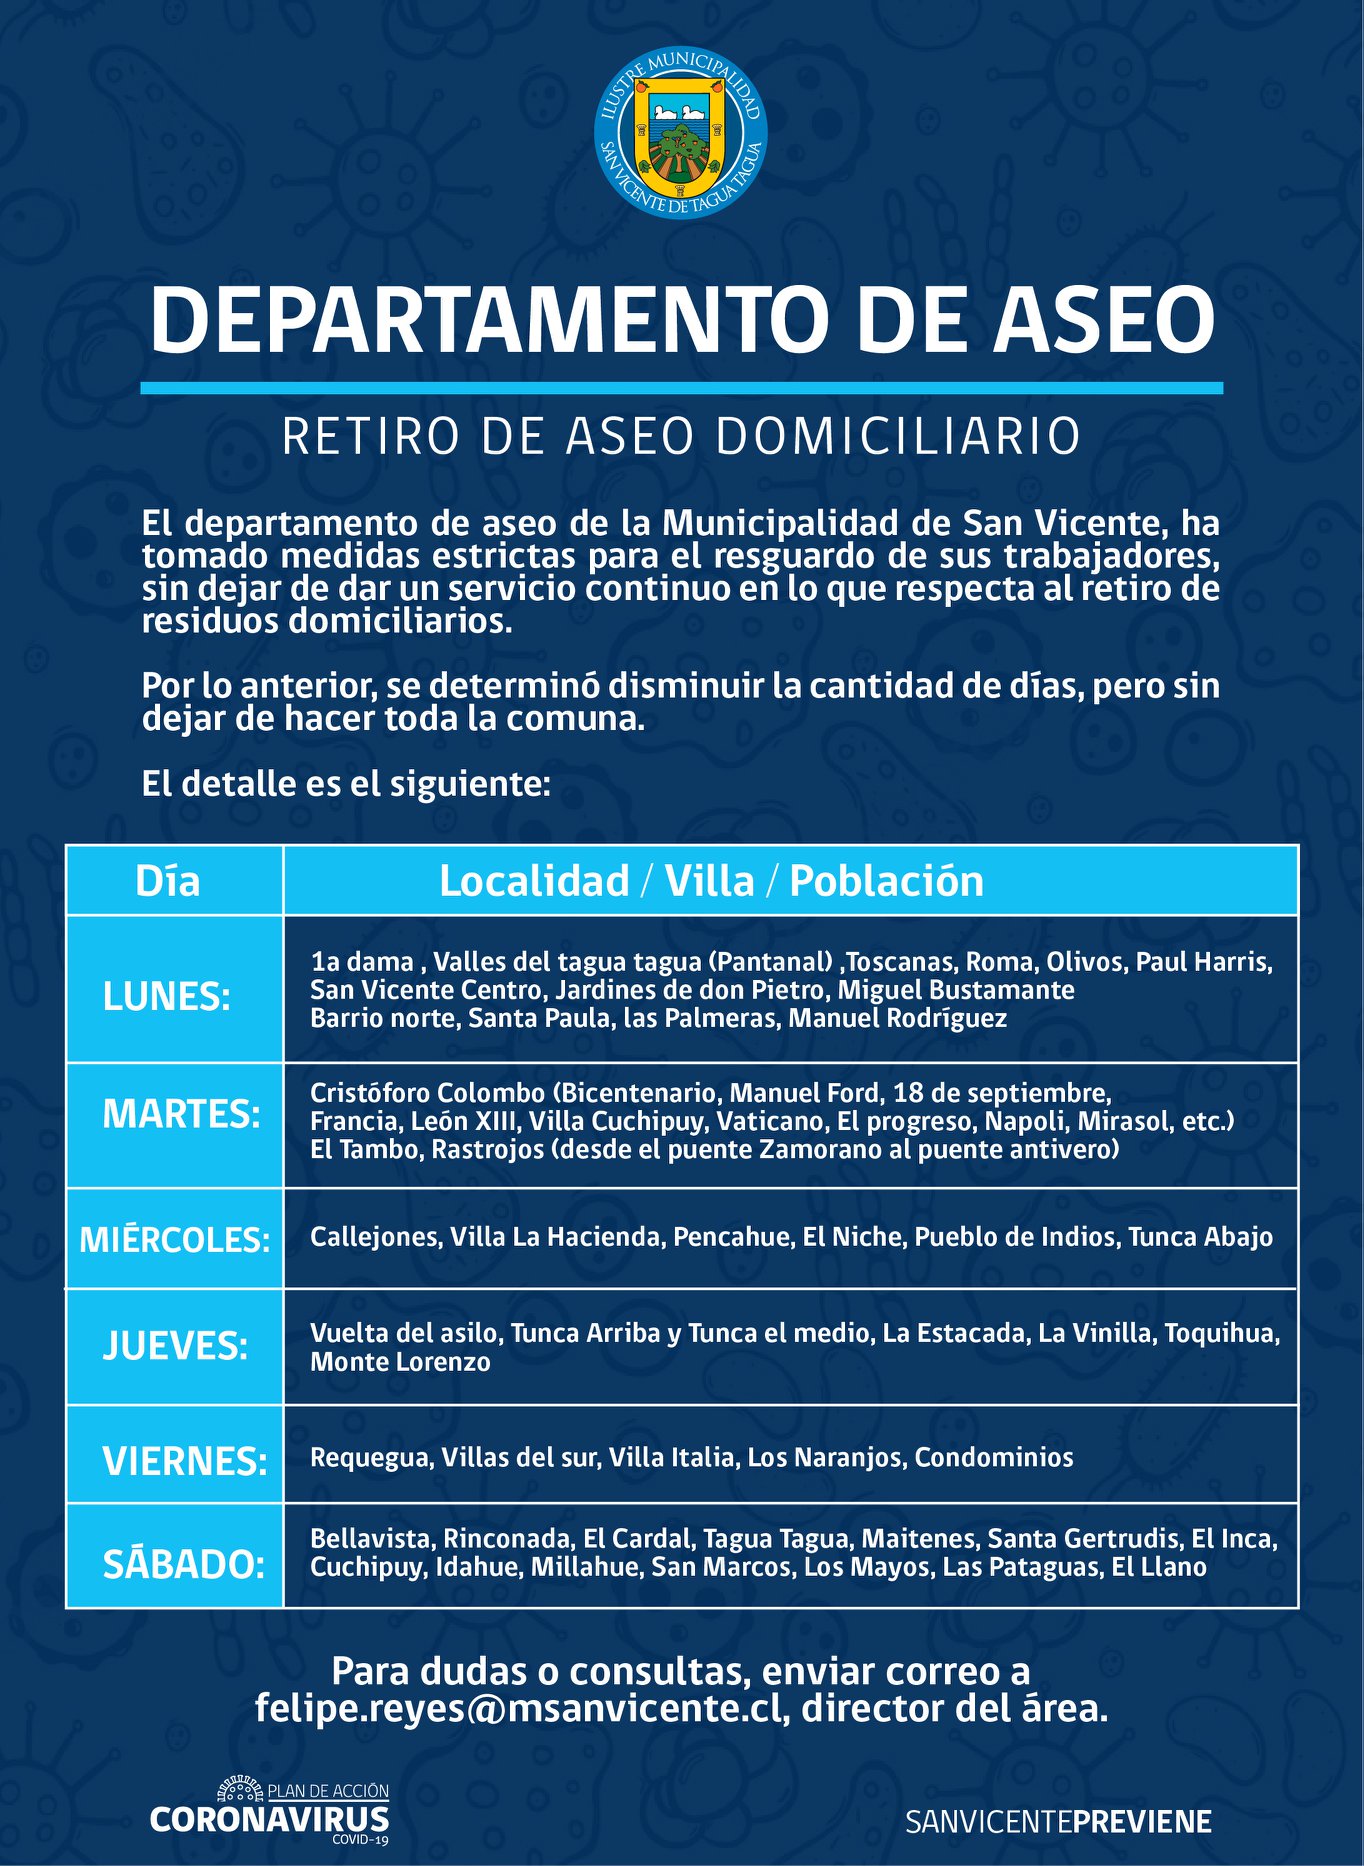 DEPARTAMENTO DE ASEO INFORMA DÍA, LOCALIDAD / VILLA / POBLACIÓN DE RECORRIDOS DE RETIRO DE ASEO DOMICILIARIO